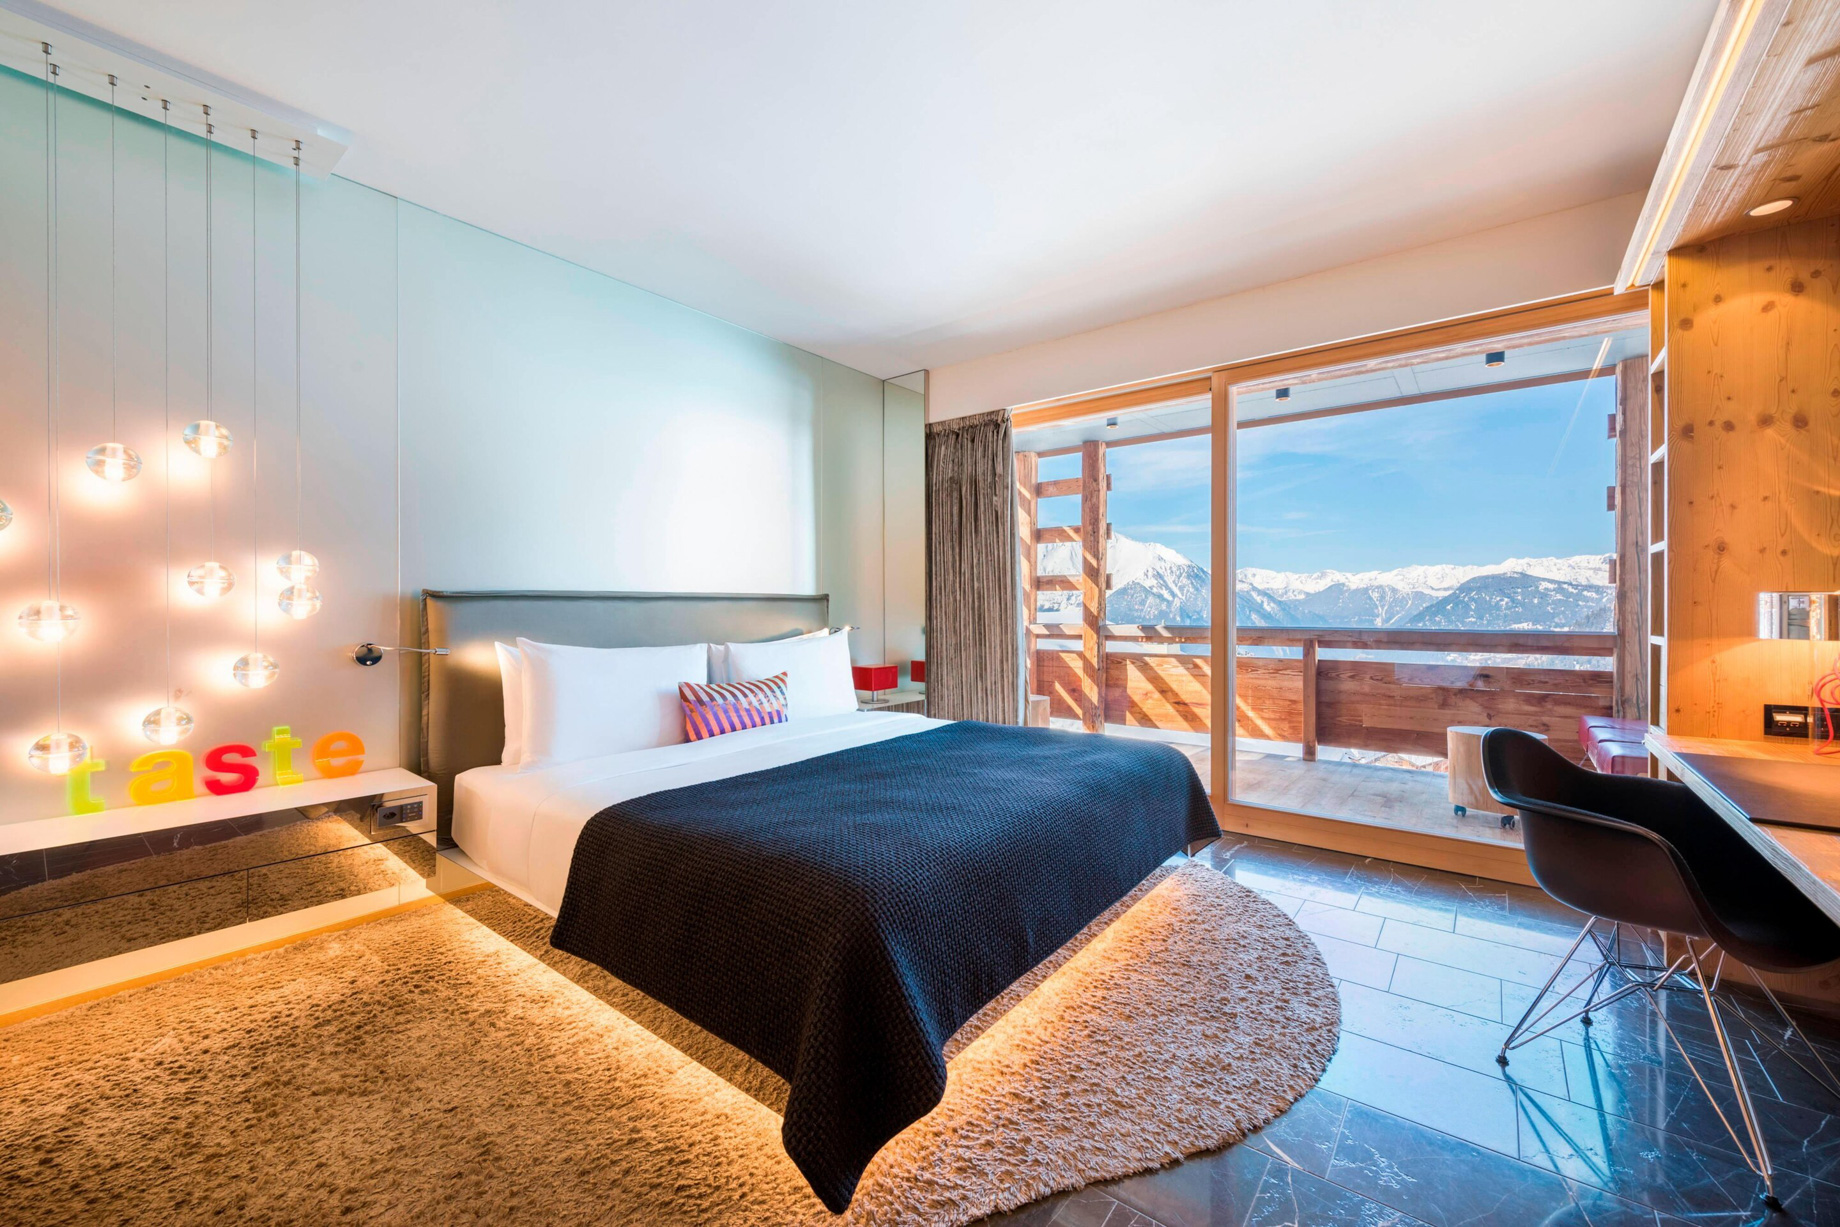 W Verbier Hotel – Verbier, Switzerland – Spectacular Bedroom Mountain View